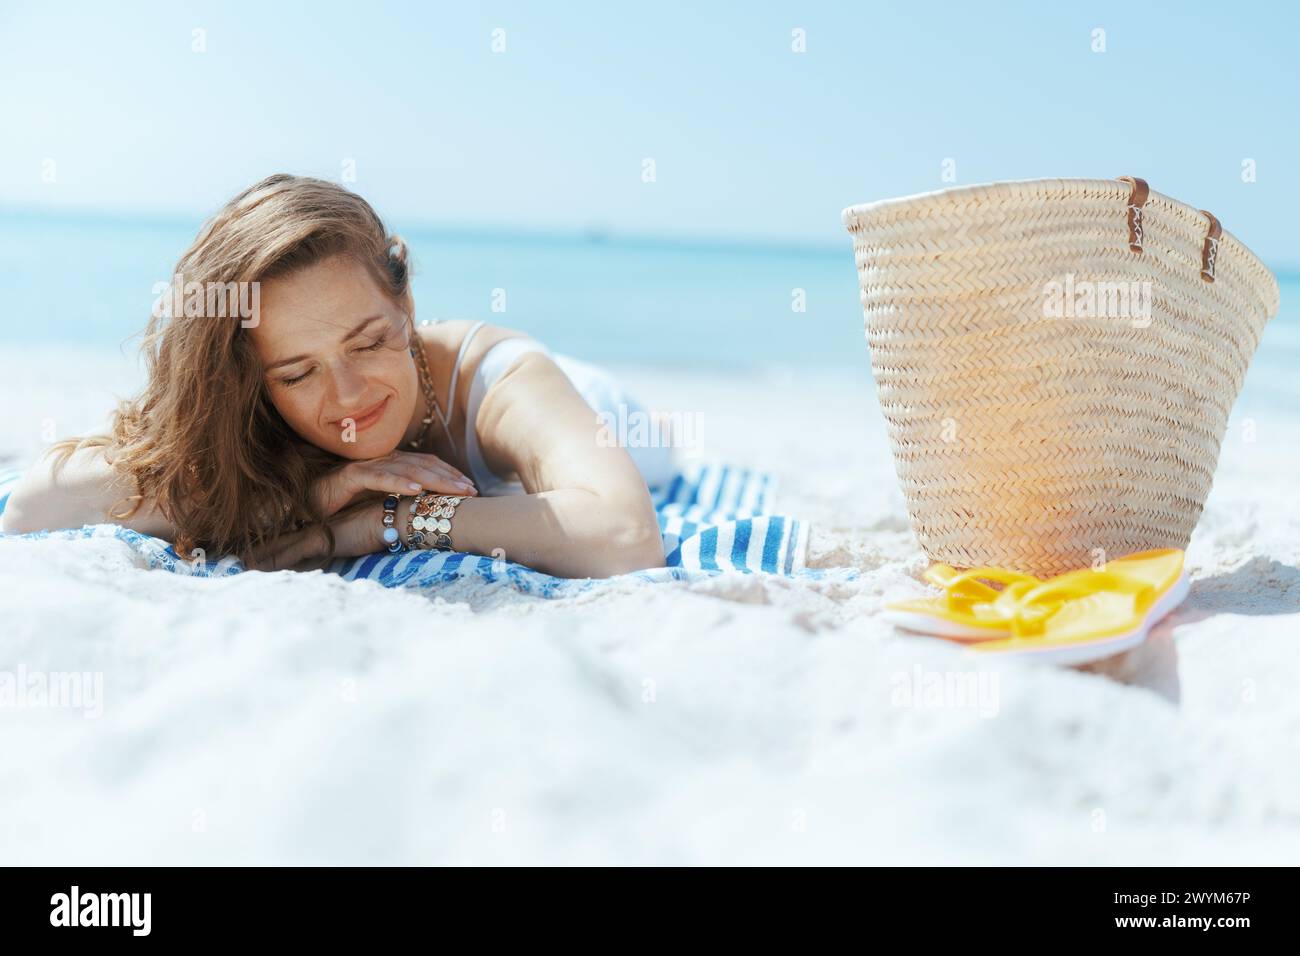 Entspannte elegante 40-jährige Frau am Meer mit Strohbeutel und gestreiftem Handtuch. Stockfoto